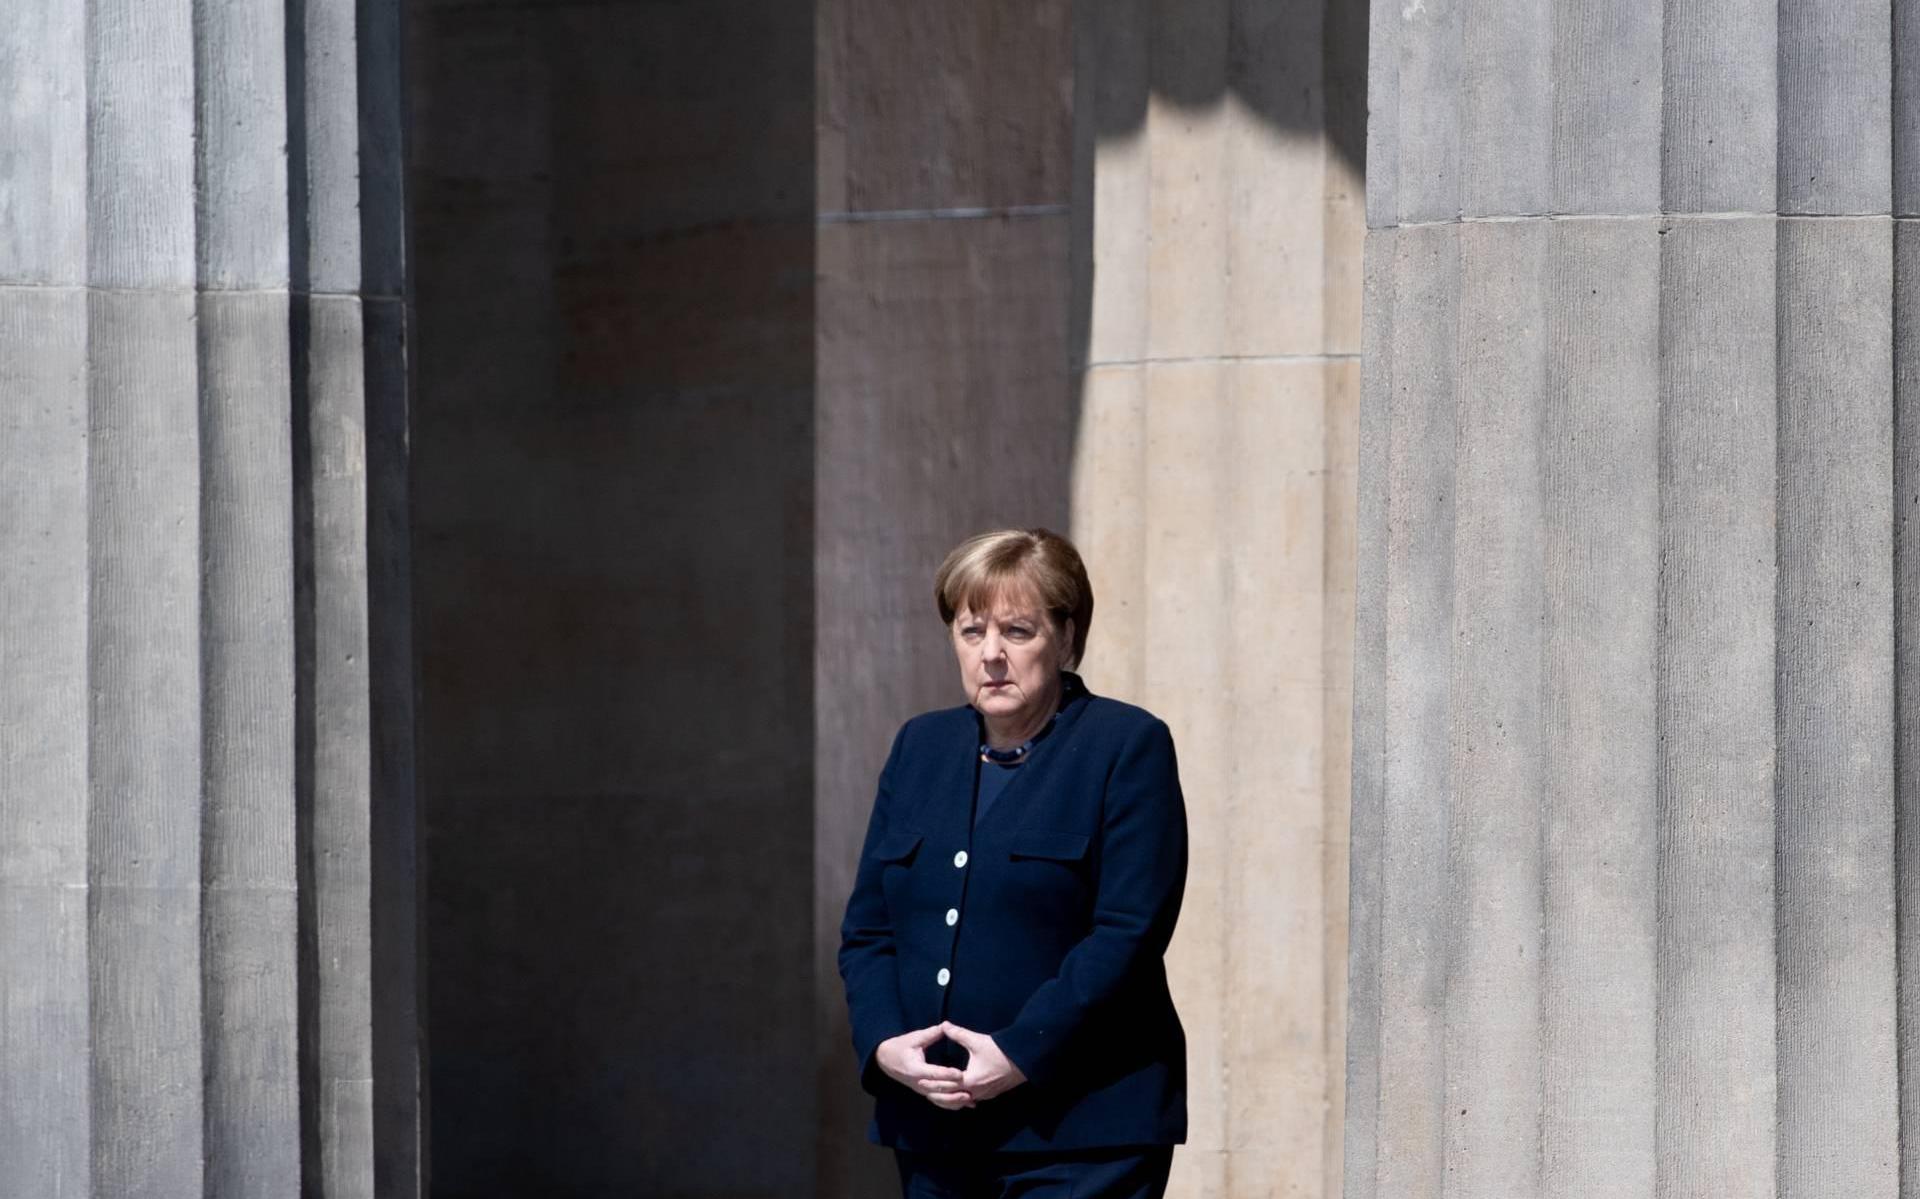 Ambassadeur neemt ontslag na vergelijking Merkel met Hitler